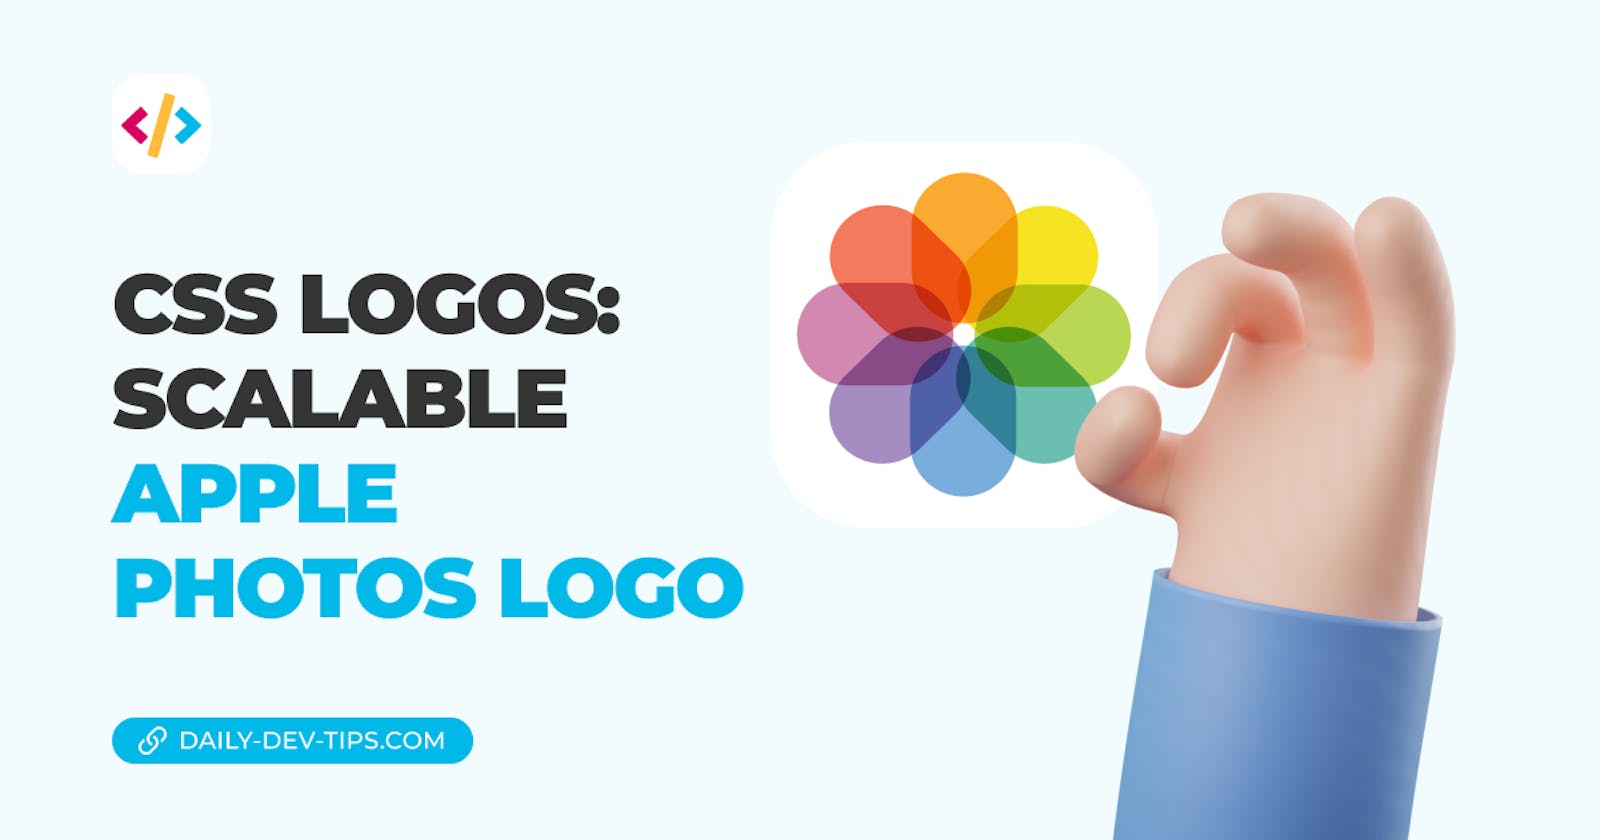 CSS Logos: Scalable Apple Photos logo